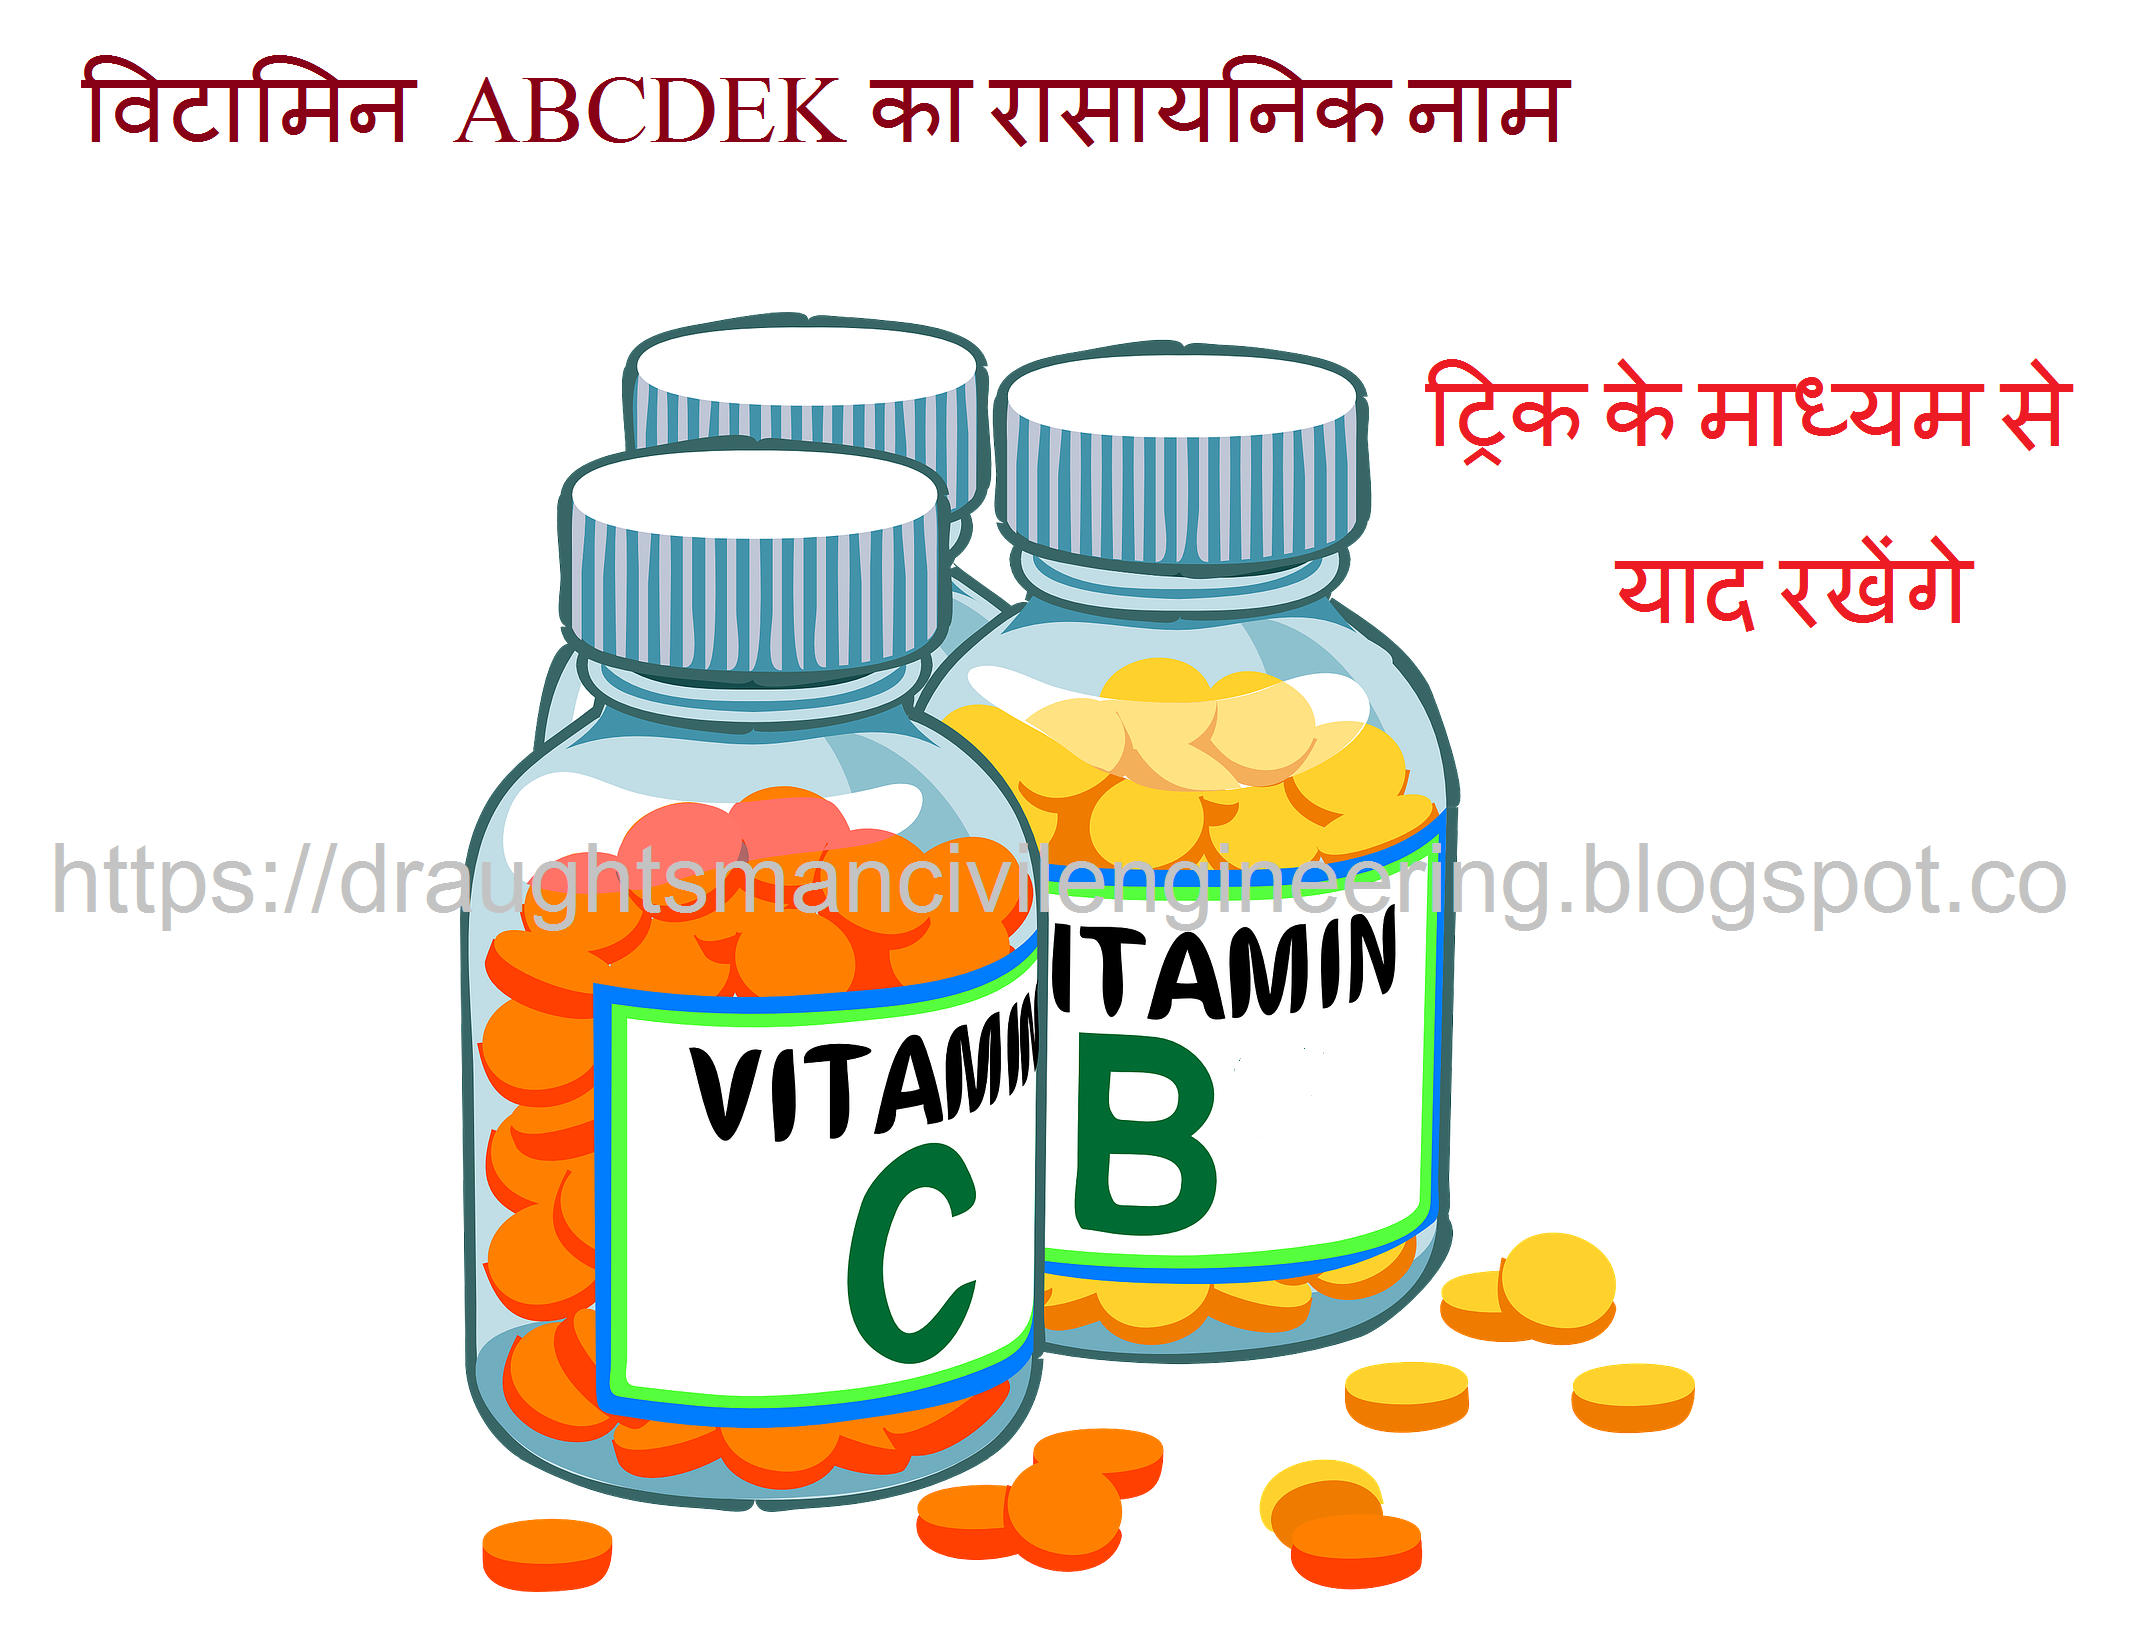 Chemical name of vitamins